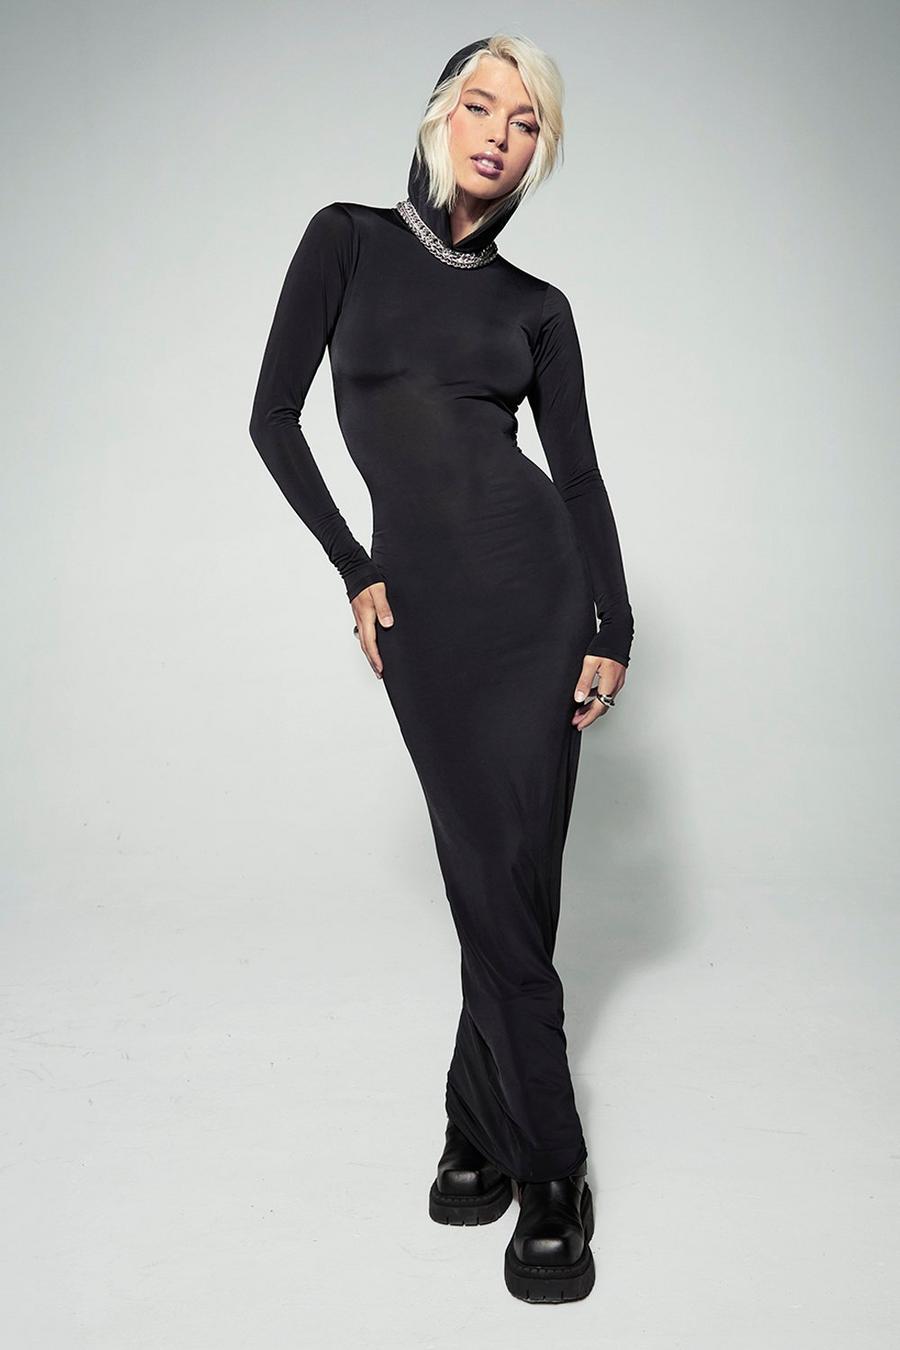 Black schwarz Kourtney Kardashian Barker Slinky Hooded Maxi Dress